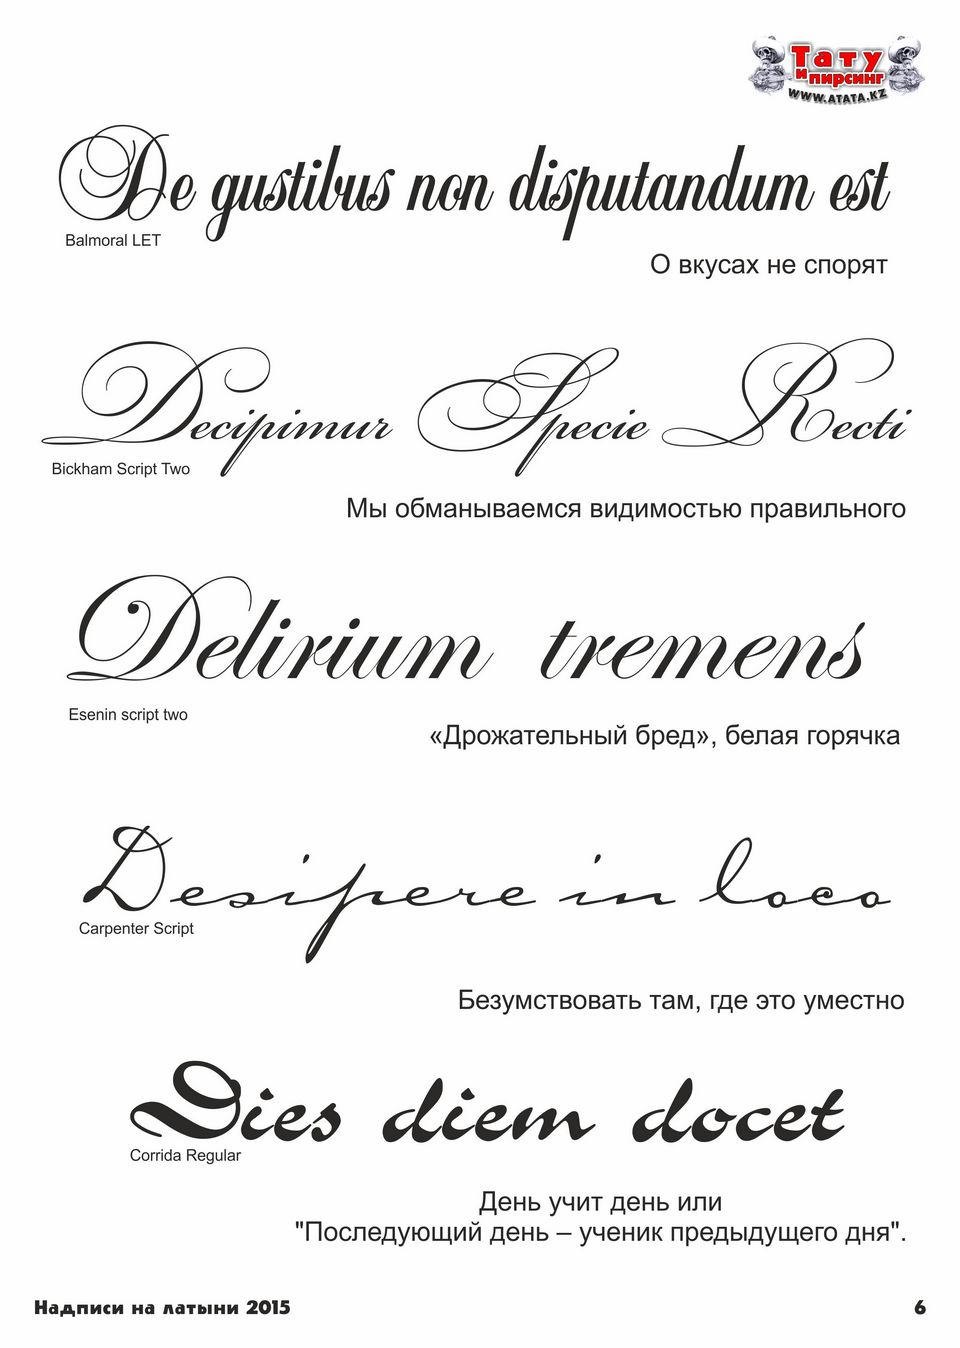 Тату надписи на латыни со смыслом с переводом